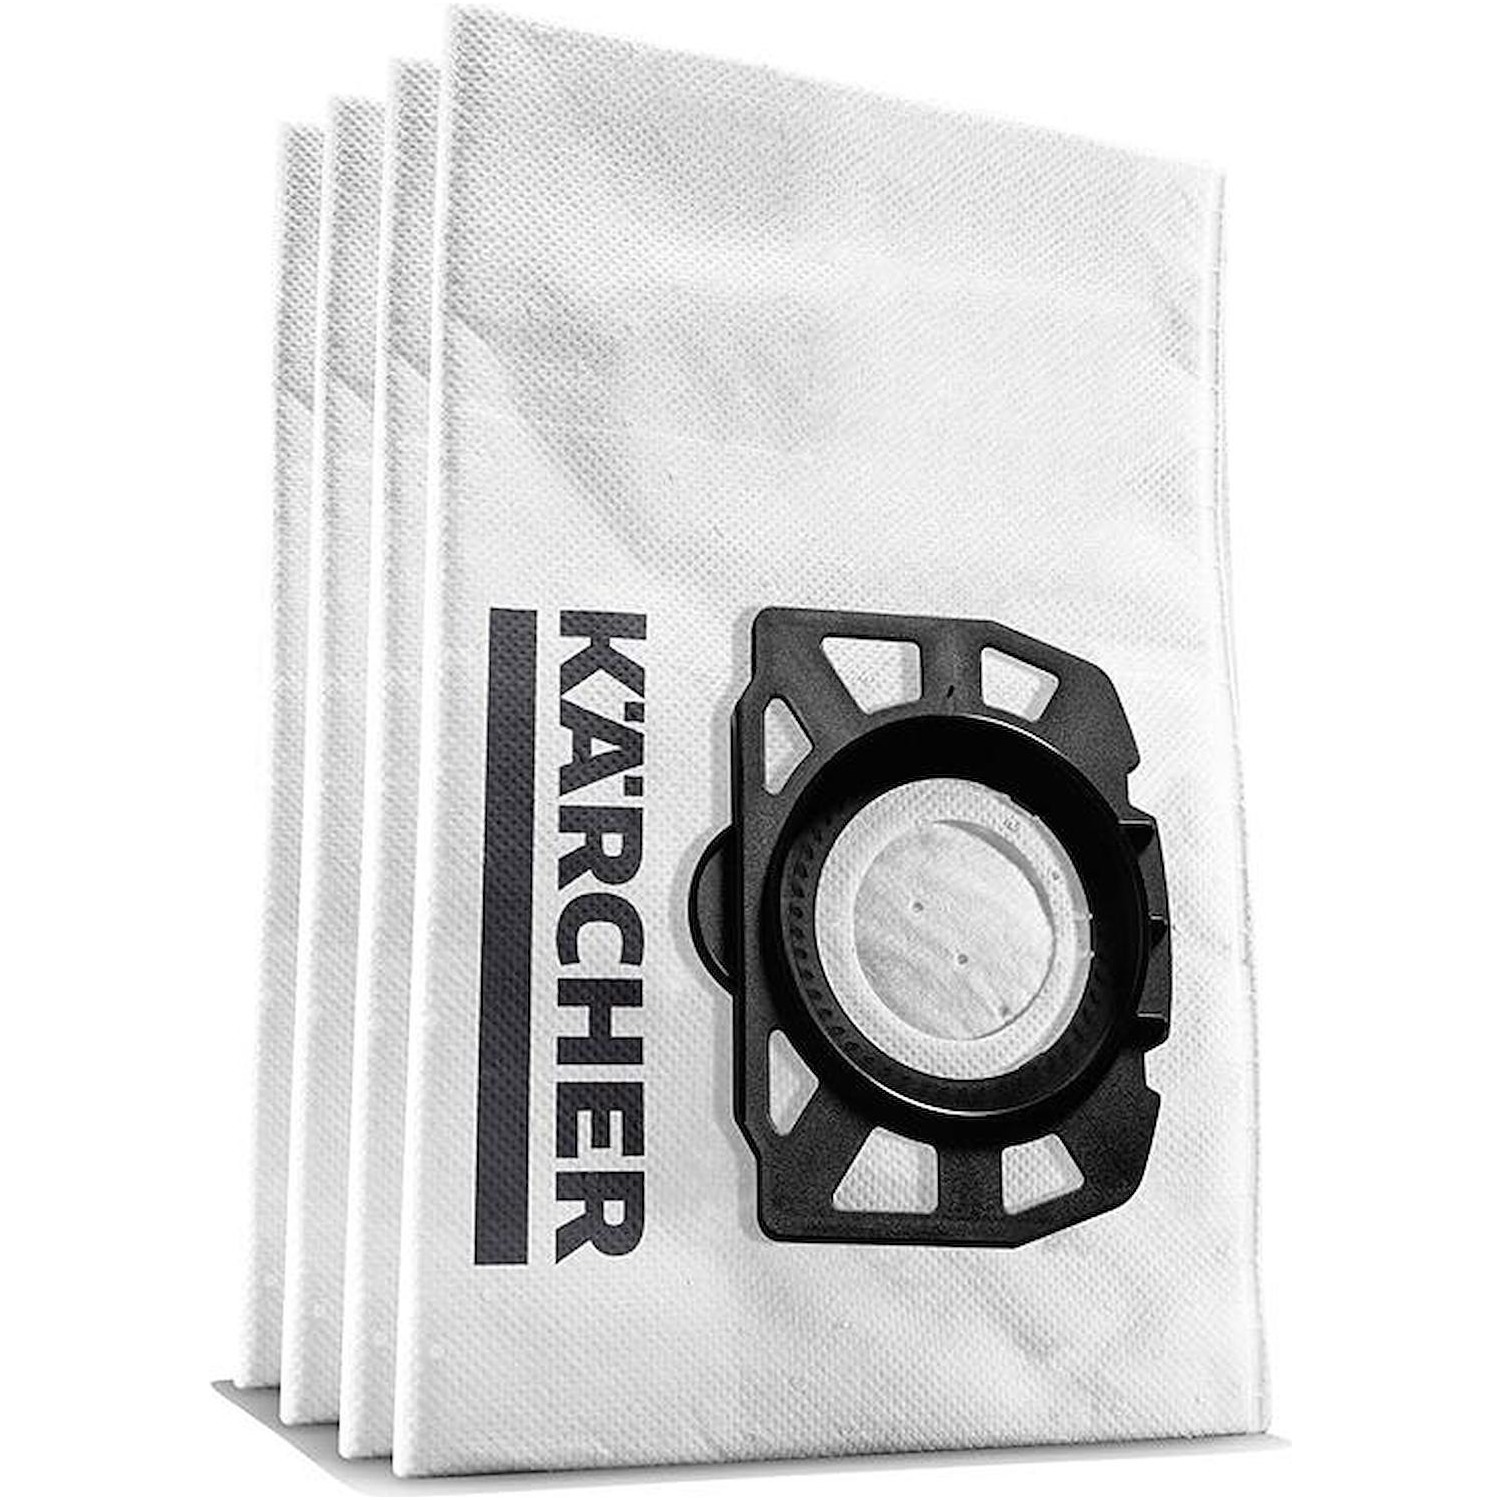 Immagine per Accessorio sacchetto filtro in vello Karcher 2.863-314.0 confezione 4pz da DIMOStore